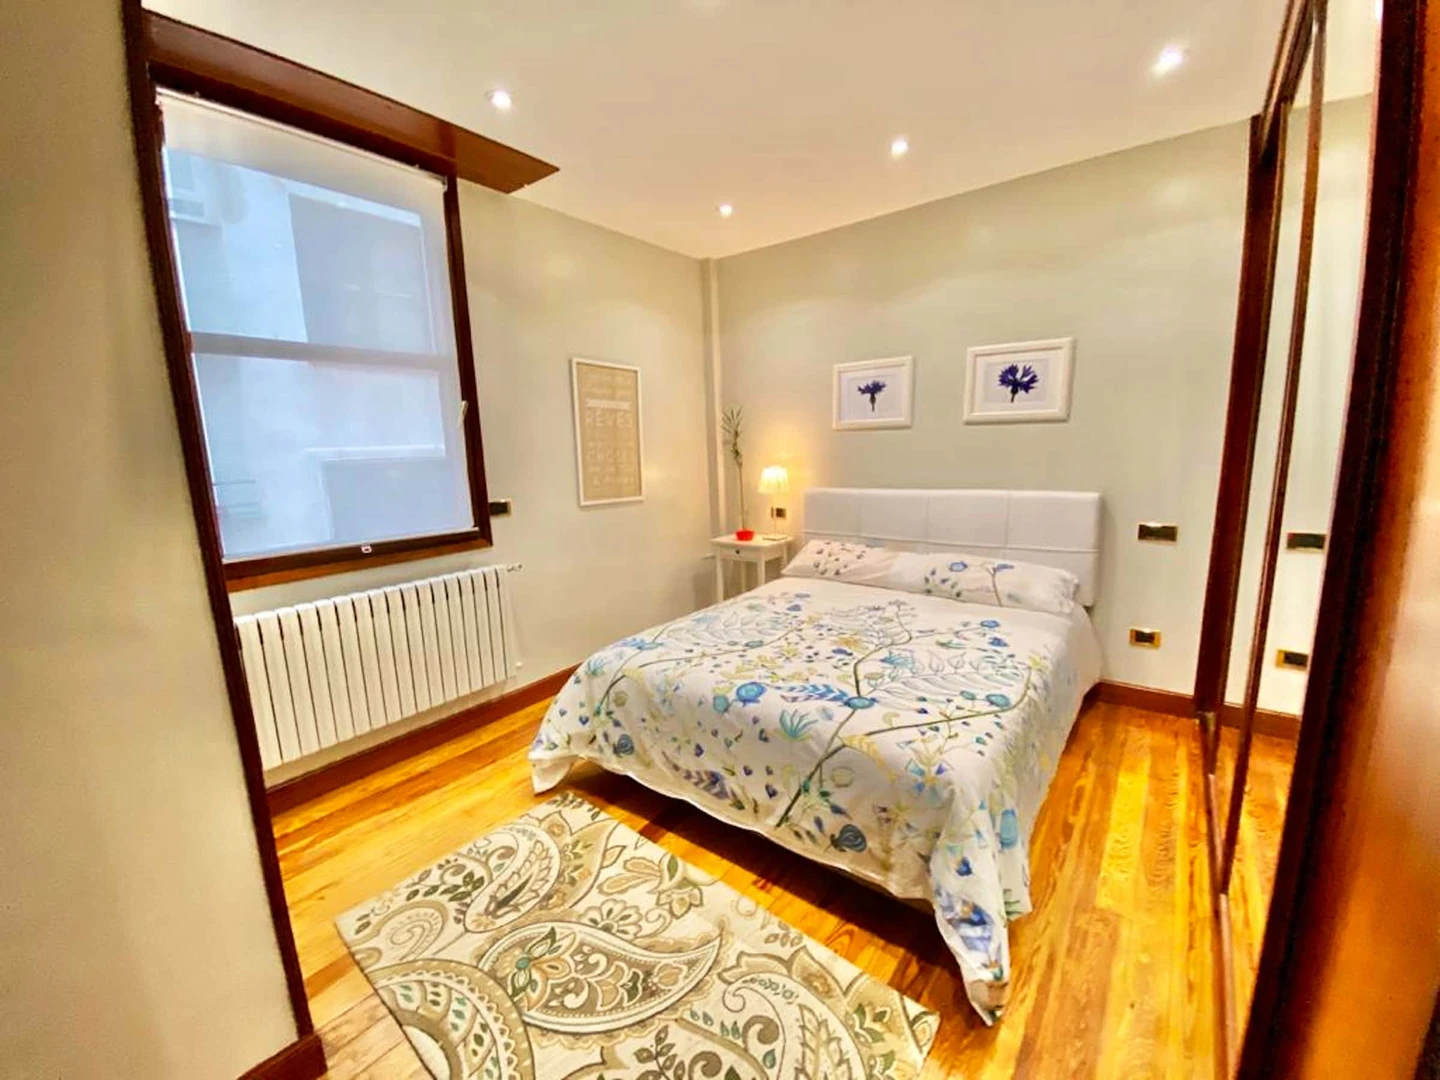 Quarto para alugar num apartamento partilhado em Bilbau